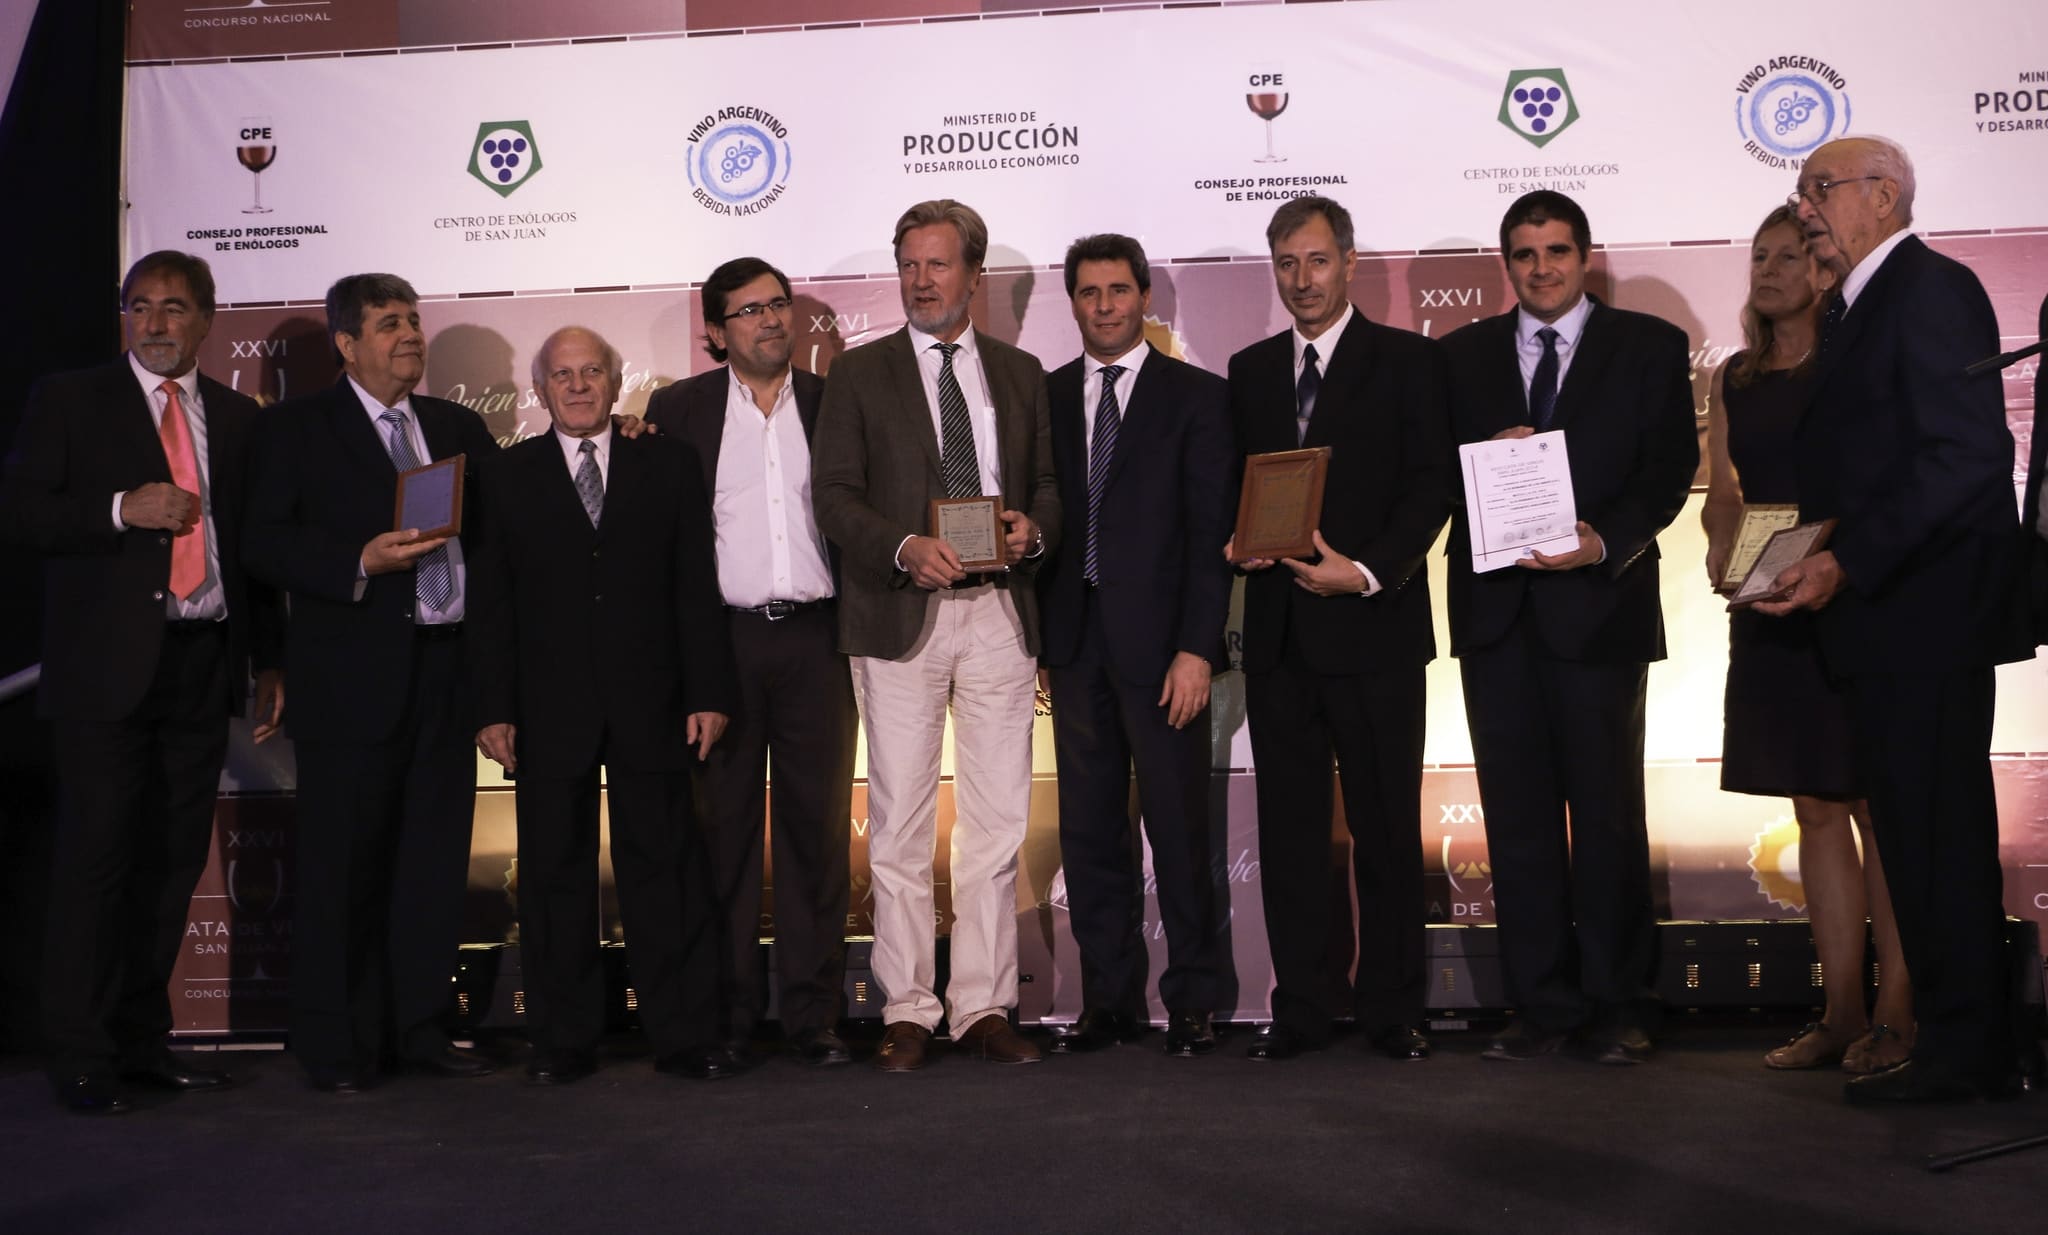 El Dr. Sergio Uñac hizo entrega de distintas distinciones a los ganadores.